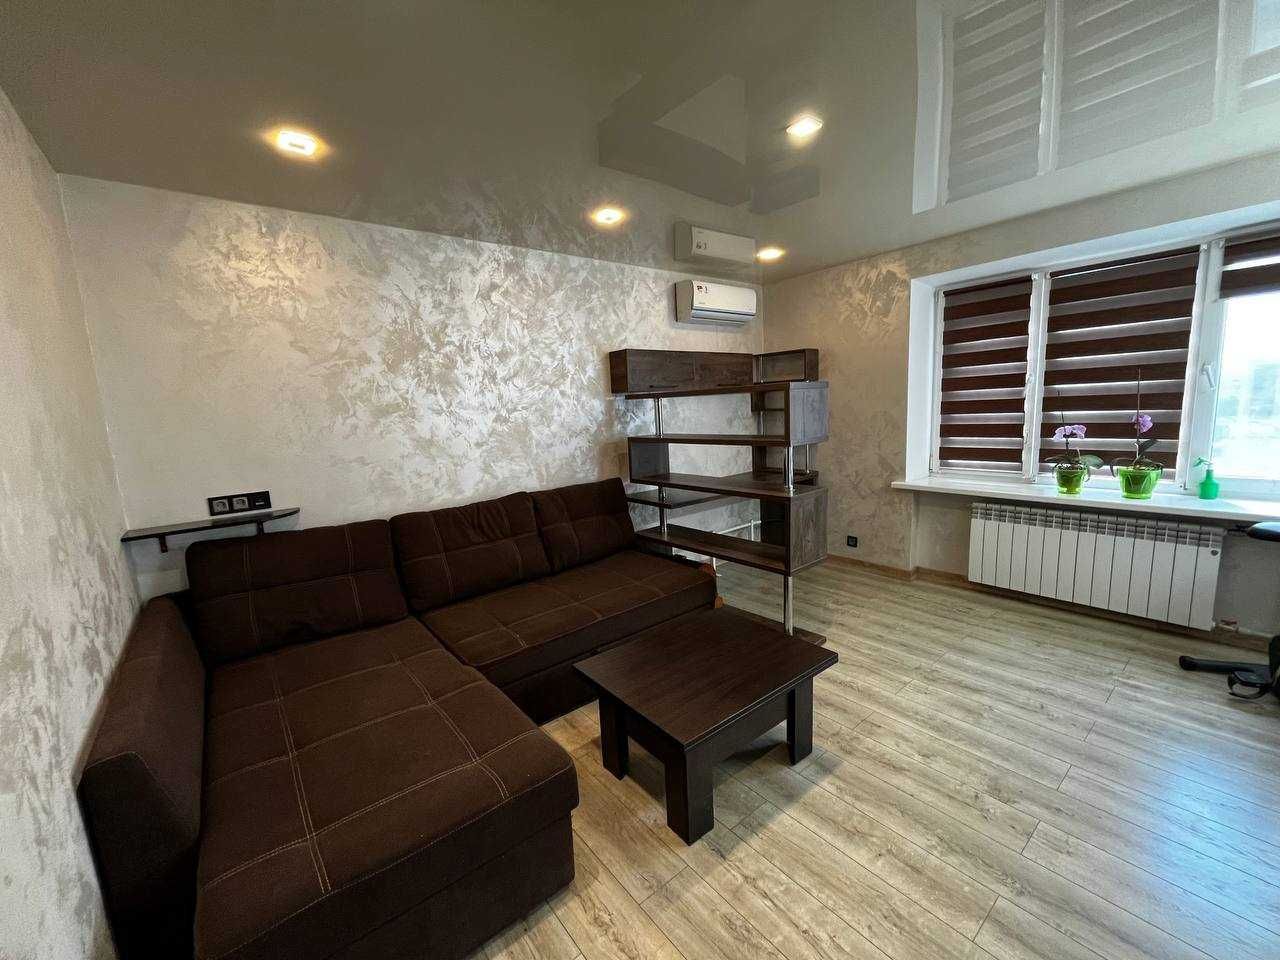 Продам 2-к квартиру з сучасним ремонтом у смт Слобожанське.